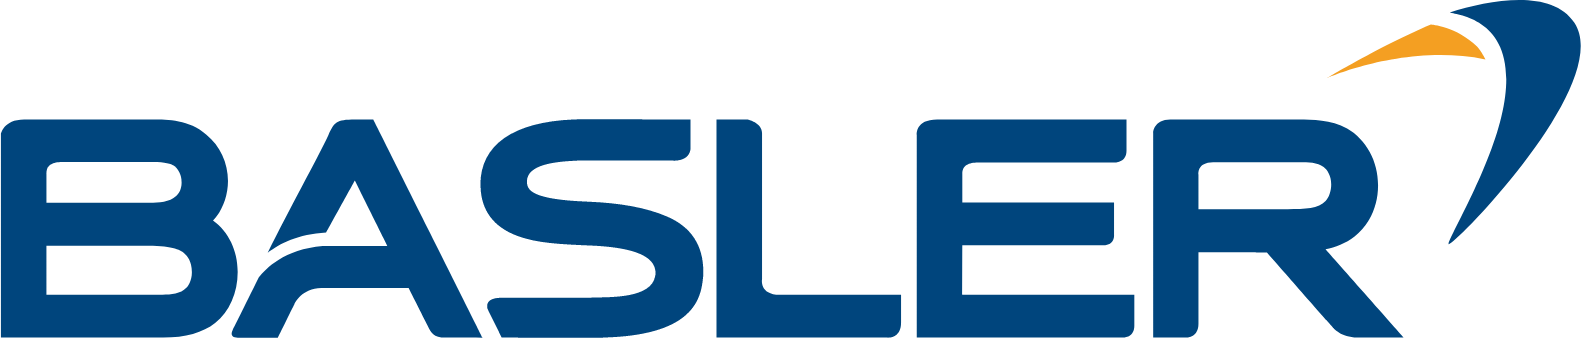 Basler Aktiengesellschaft logo large (transparent PNG)